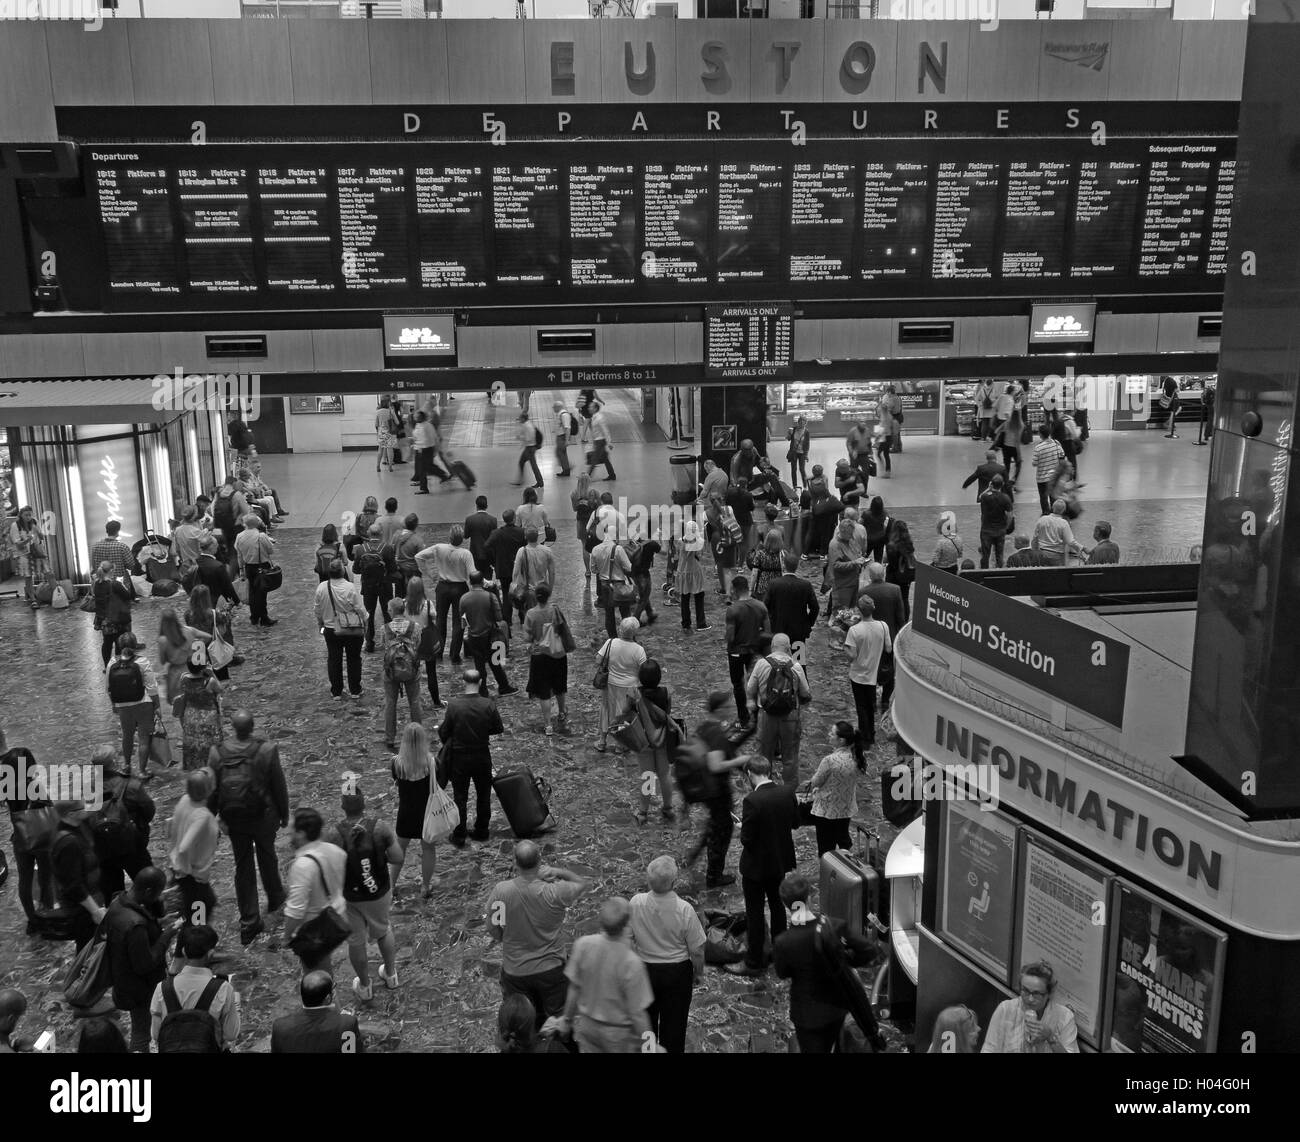 La gare de Euston Monochrome et départ de la gare, au nord de Londres, Angleterre, RU Banque D'Images